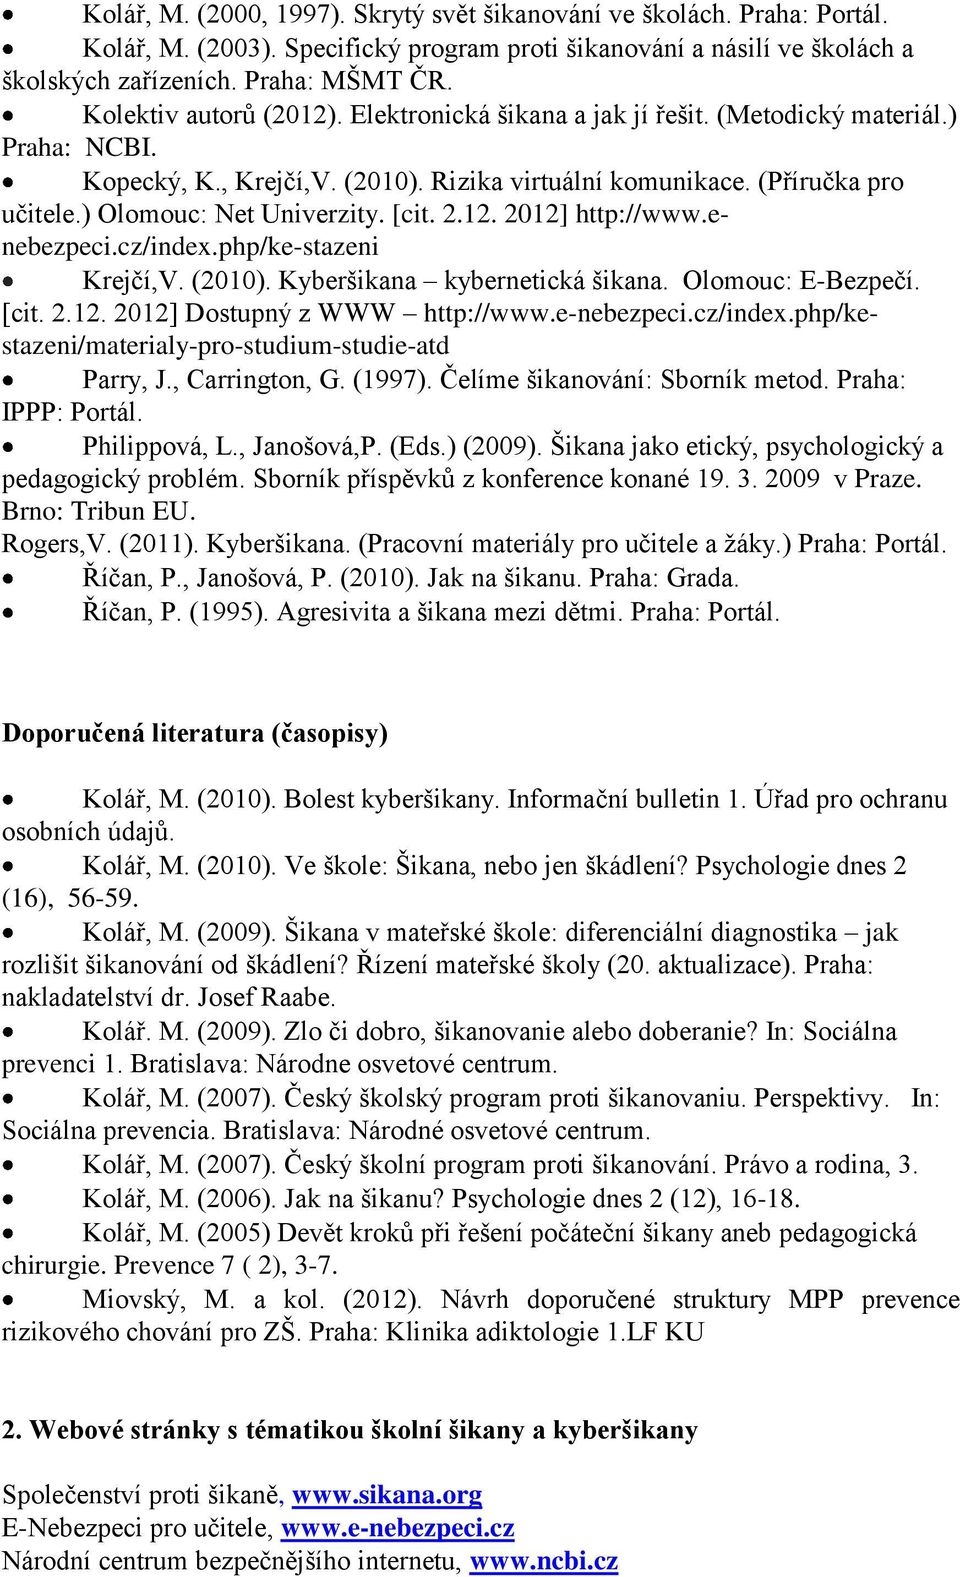 ) Olomouc: Net Univerzity. [cit. 2.12. 2012] http://www.enebezpeci.cz/index.php/ke-stazeni Krejčí,V. (2010). Kyberšikana kybernetická šikana. Olomouc: E-Bezpečí. [cit. 2.12. 2012] Dostupný z WWW http://www.